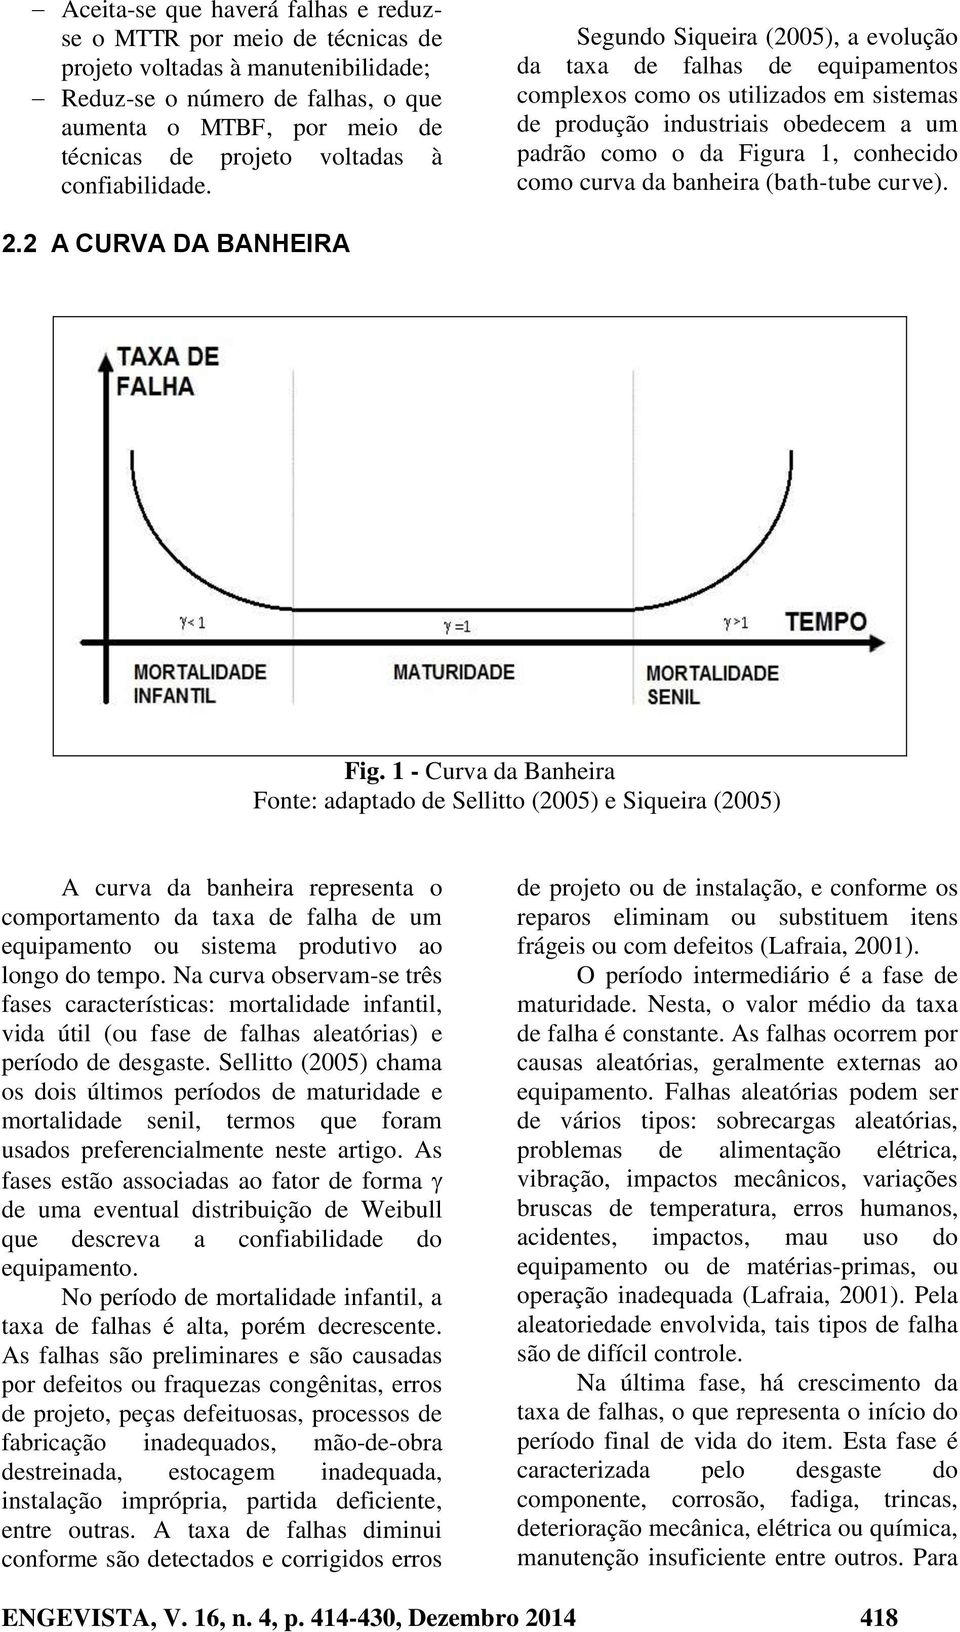 Segundo Siqueira (2005), a evolução da taxa de falhas de equipamentos complexos como os utilizados em sistemas de produção industriais obedecem a um padrão como o da Figura 1, conhecido como curva da